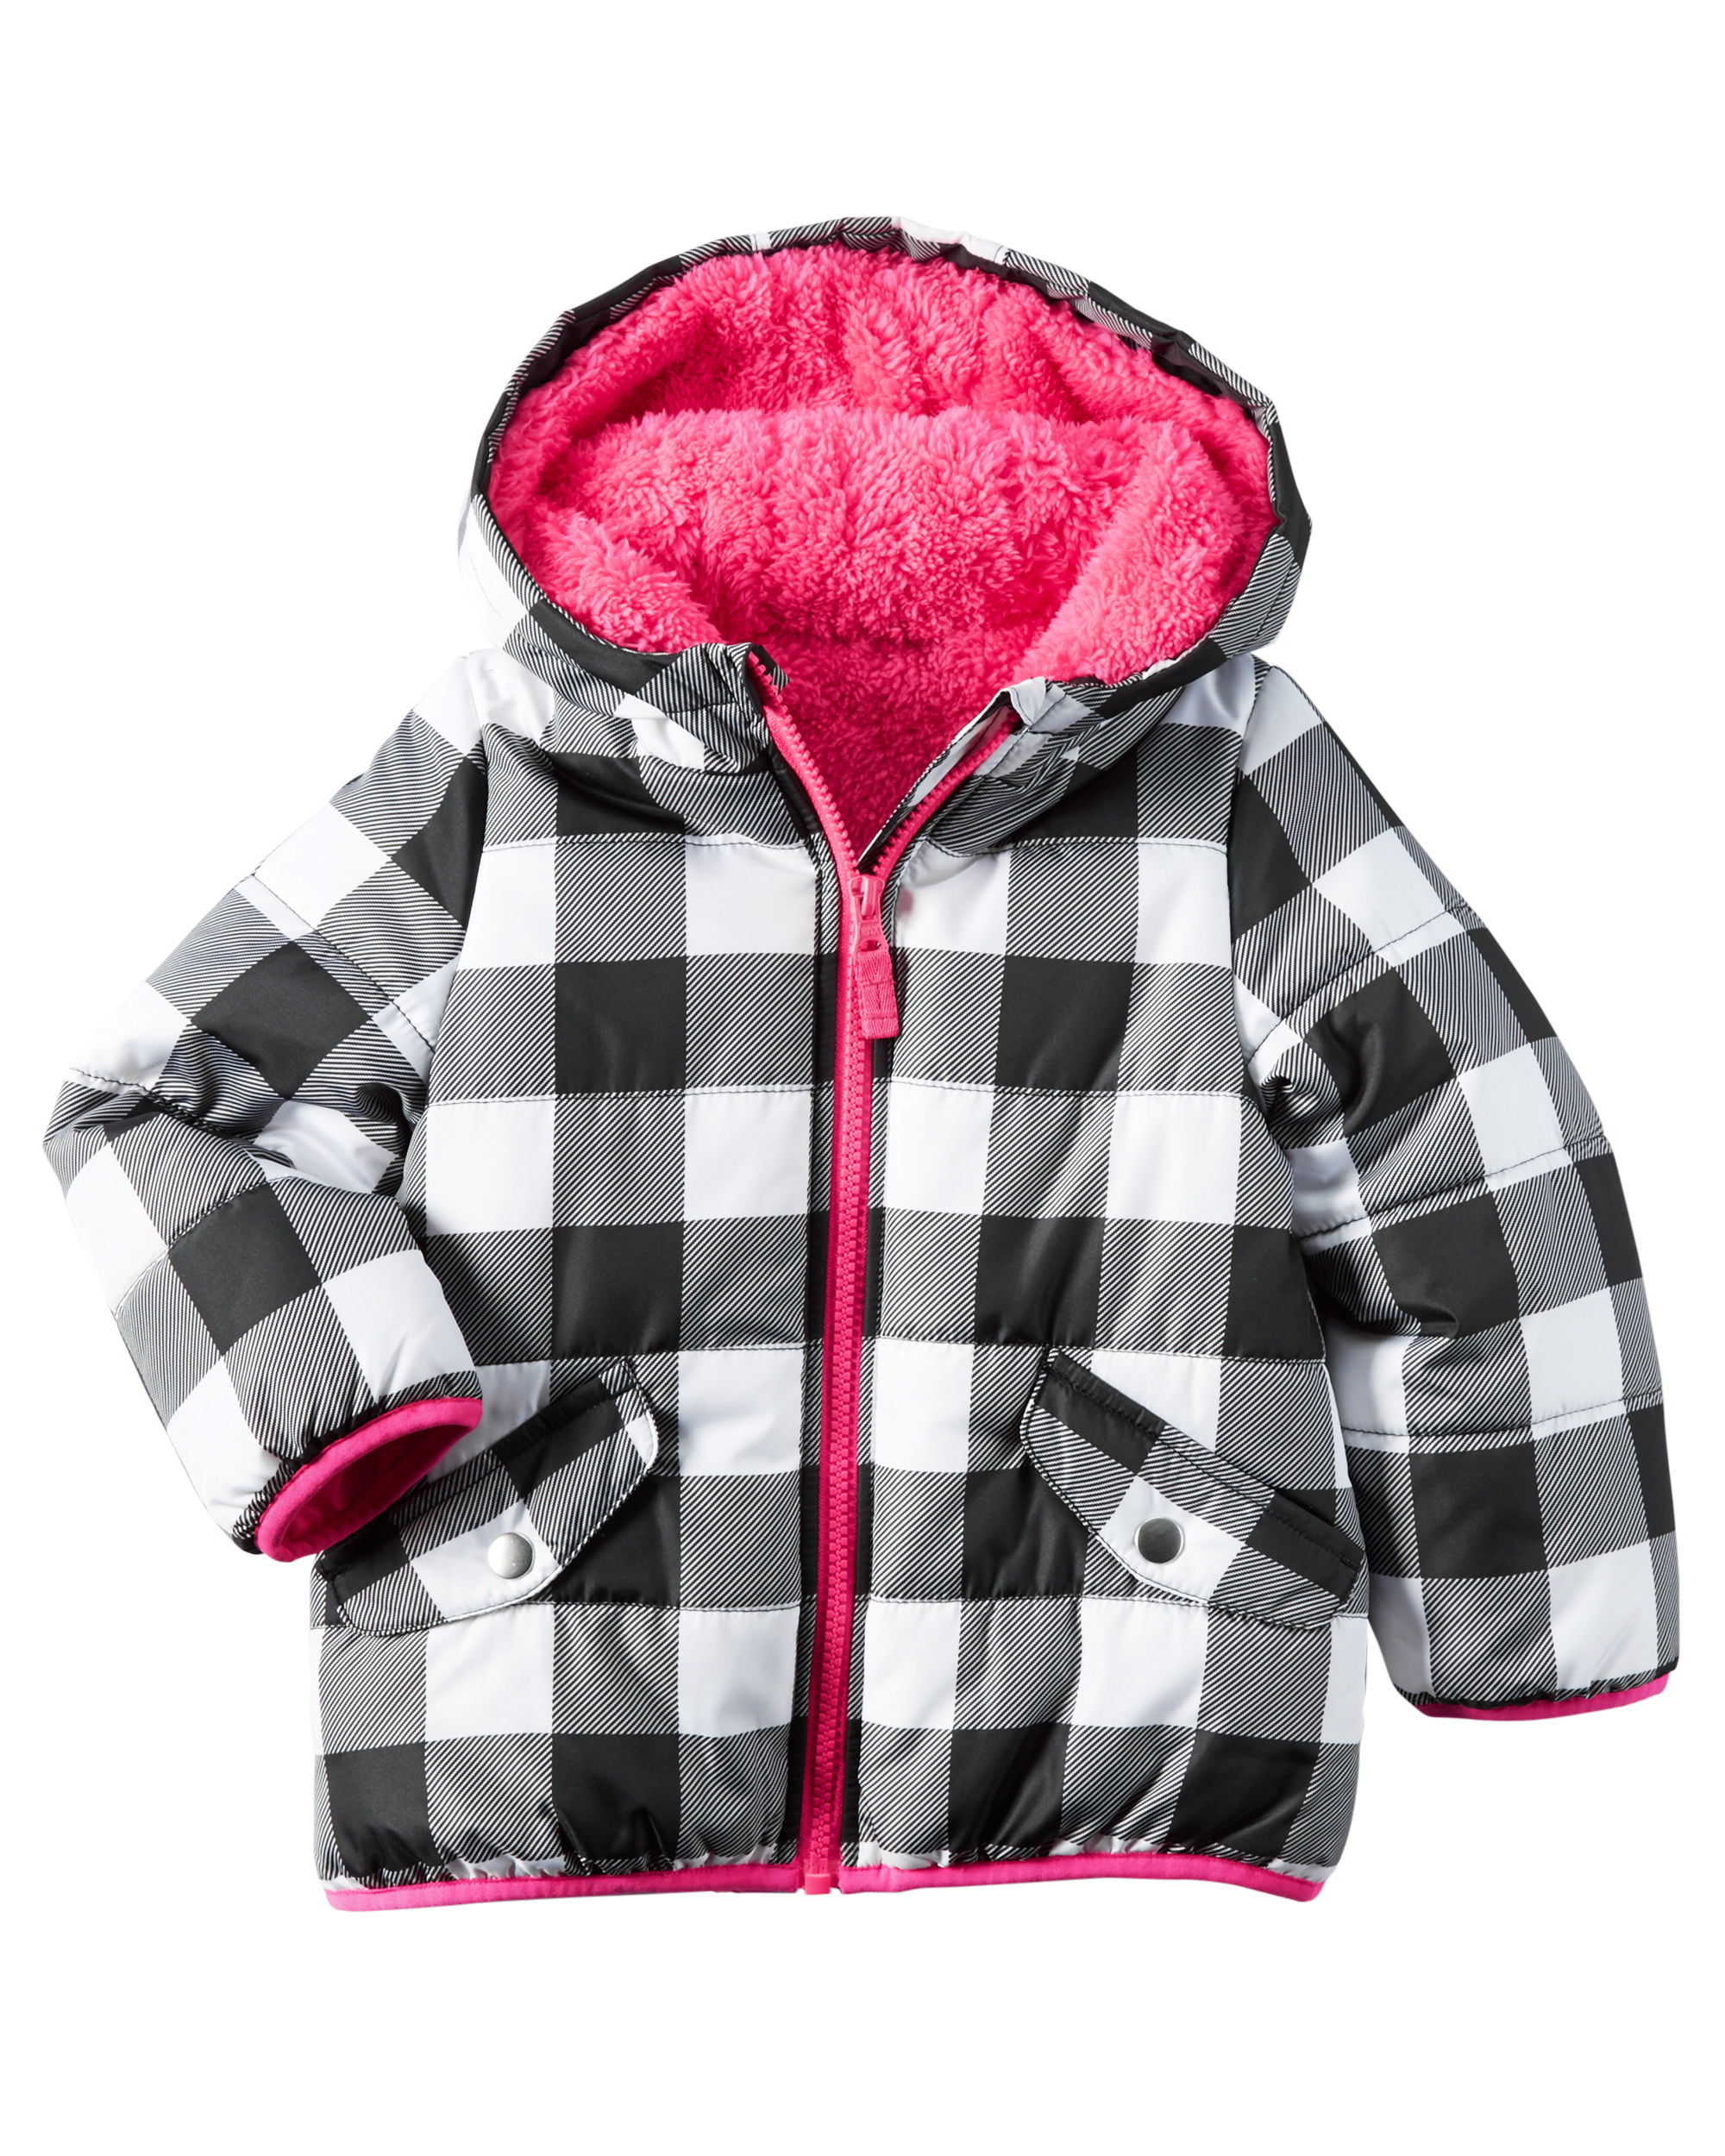 carters baby girl winter coats